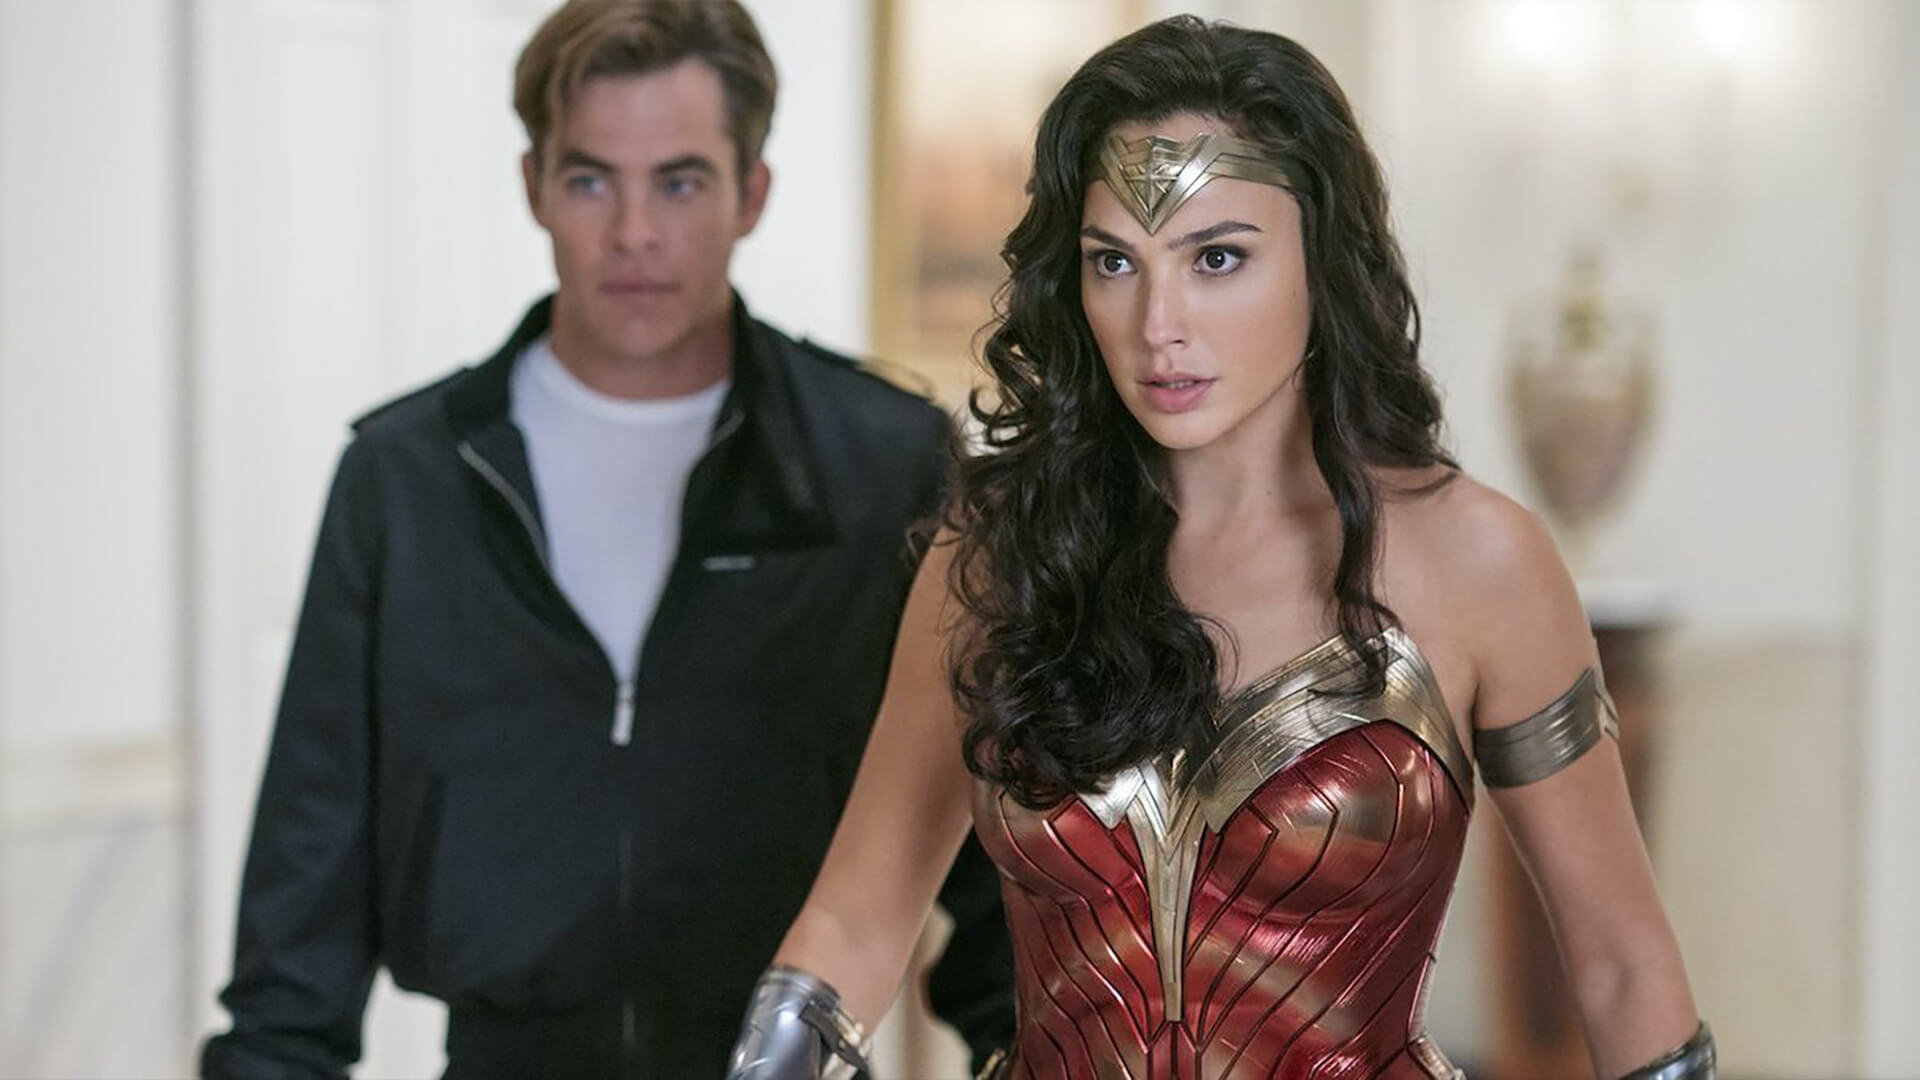 A WanerMedia ezzel indokolta döntését, miért az HBO Max ad otthont a Wonder Woman 1984-nek